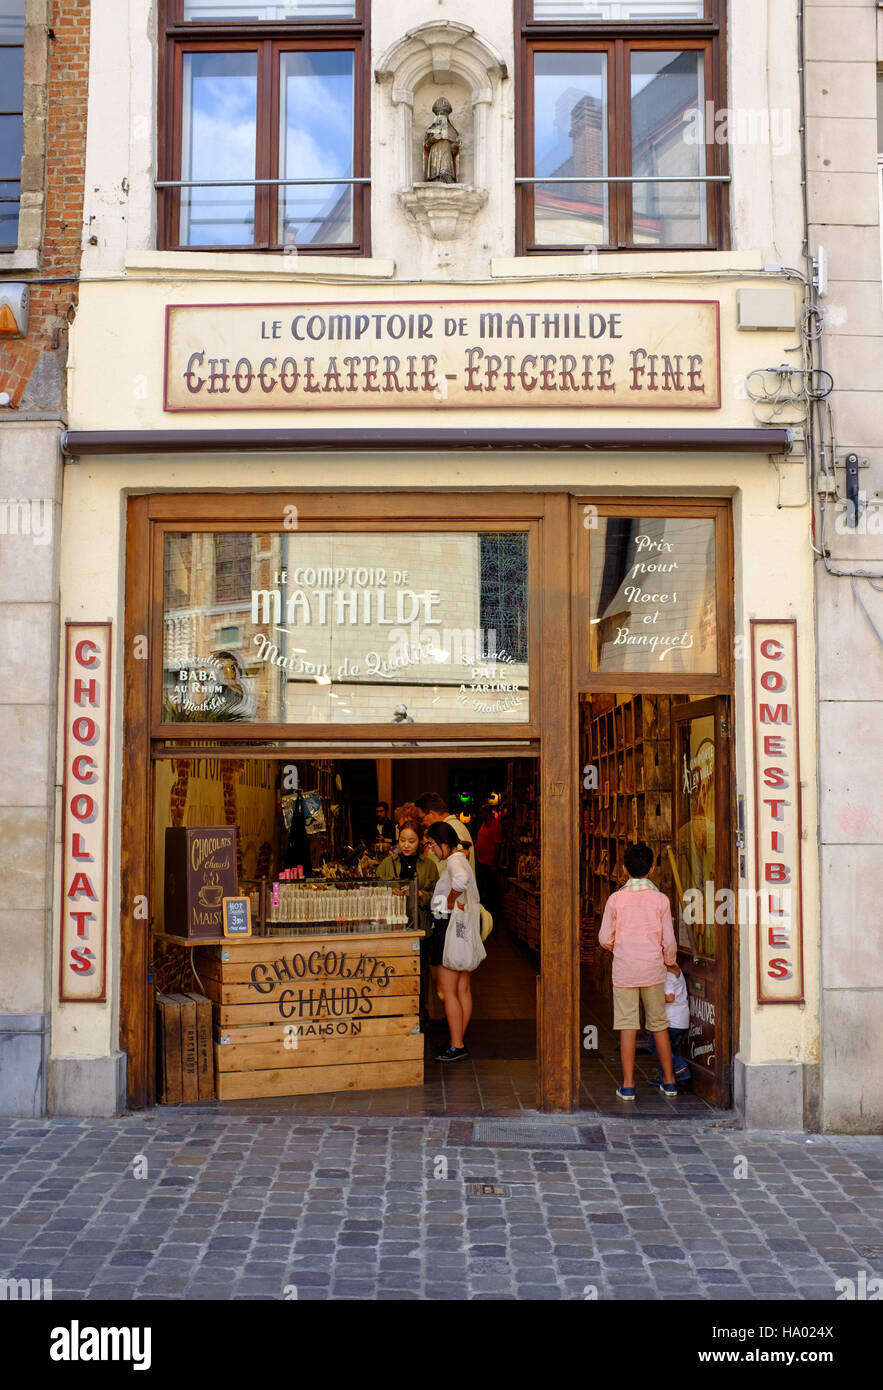 Accueil Comptoir de Mathilde Boutique chocolat belge, Bruxelles, Belgique  Photo Stock - Alamy